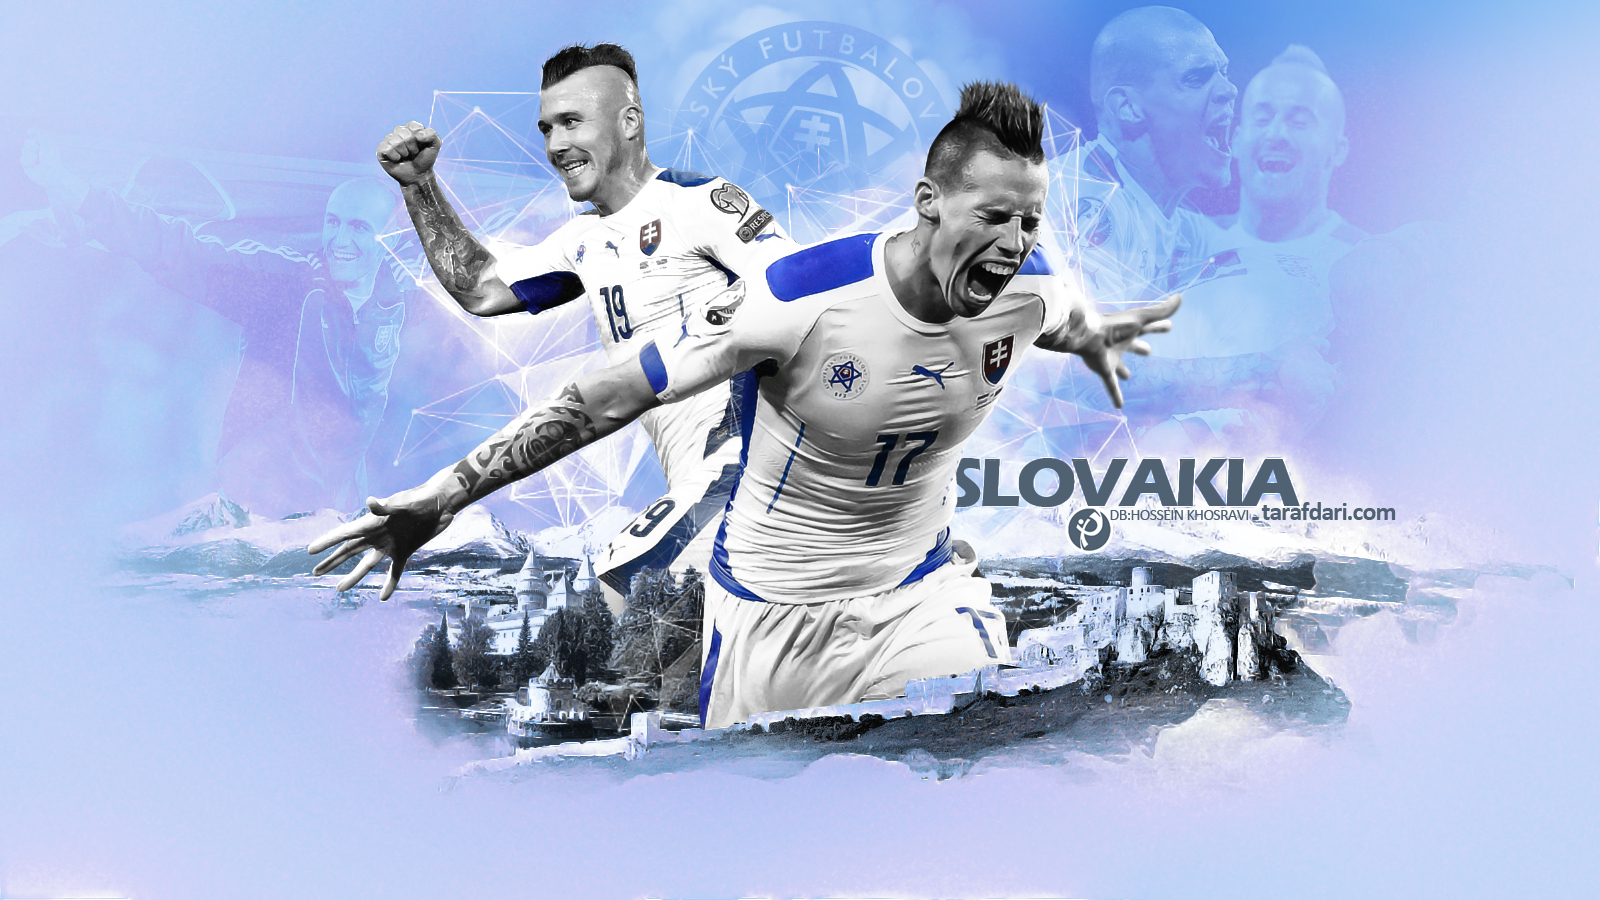 شماره پیراهن بازیکنان تیم ملی اسلواکی برای یورو 2016